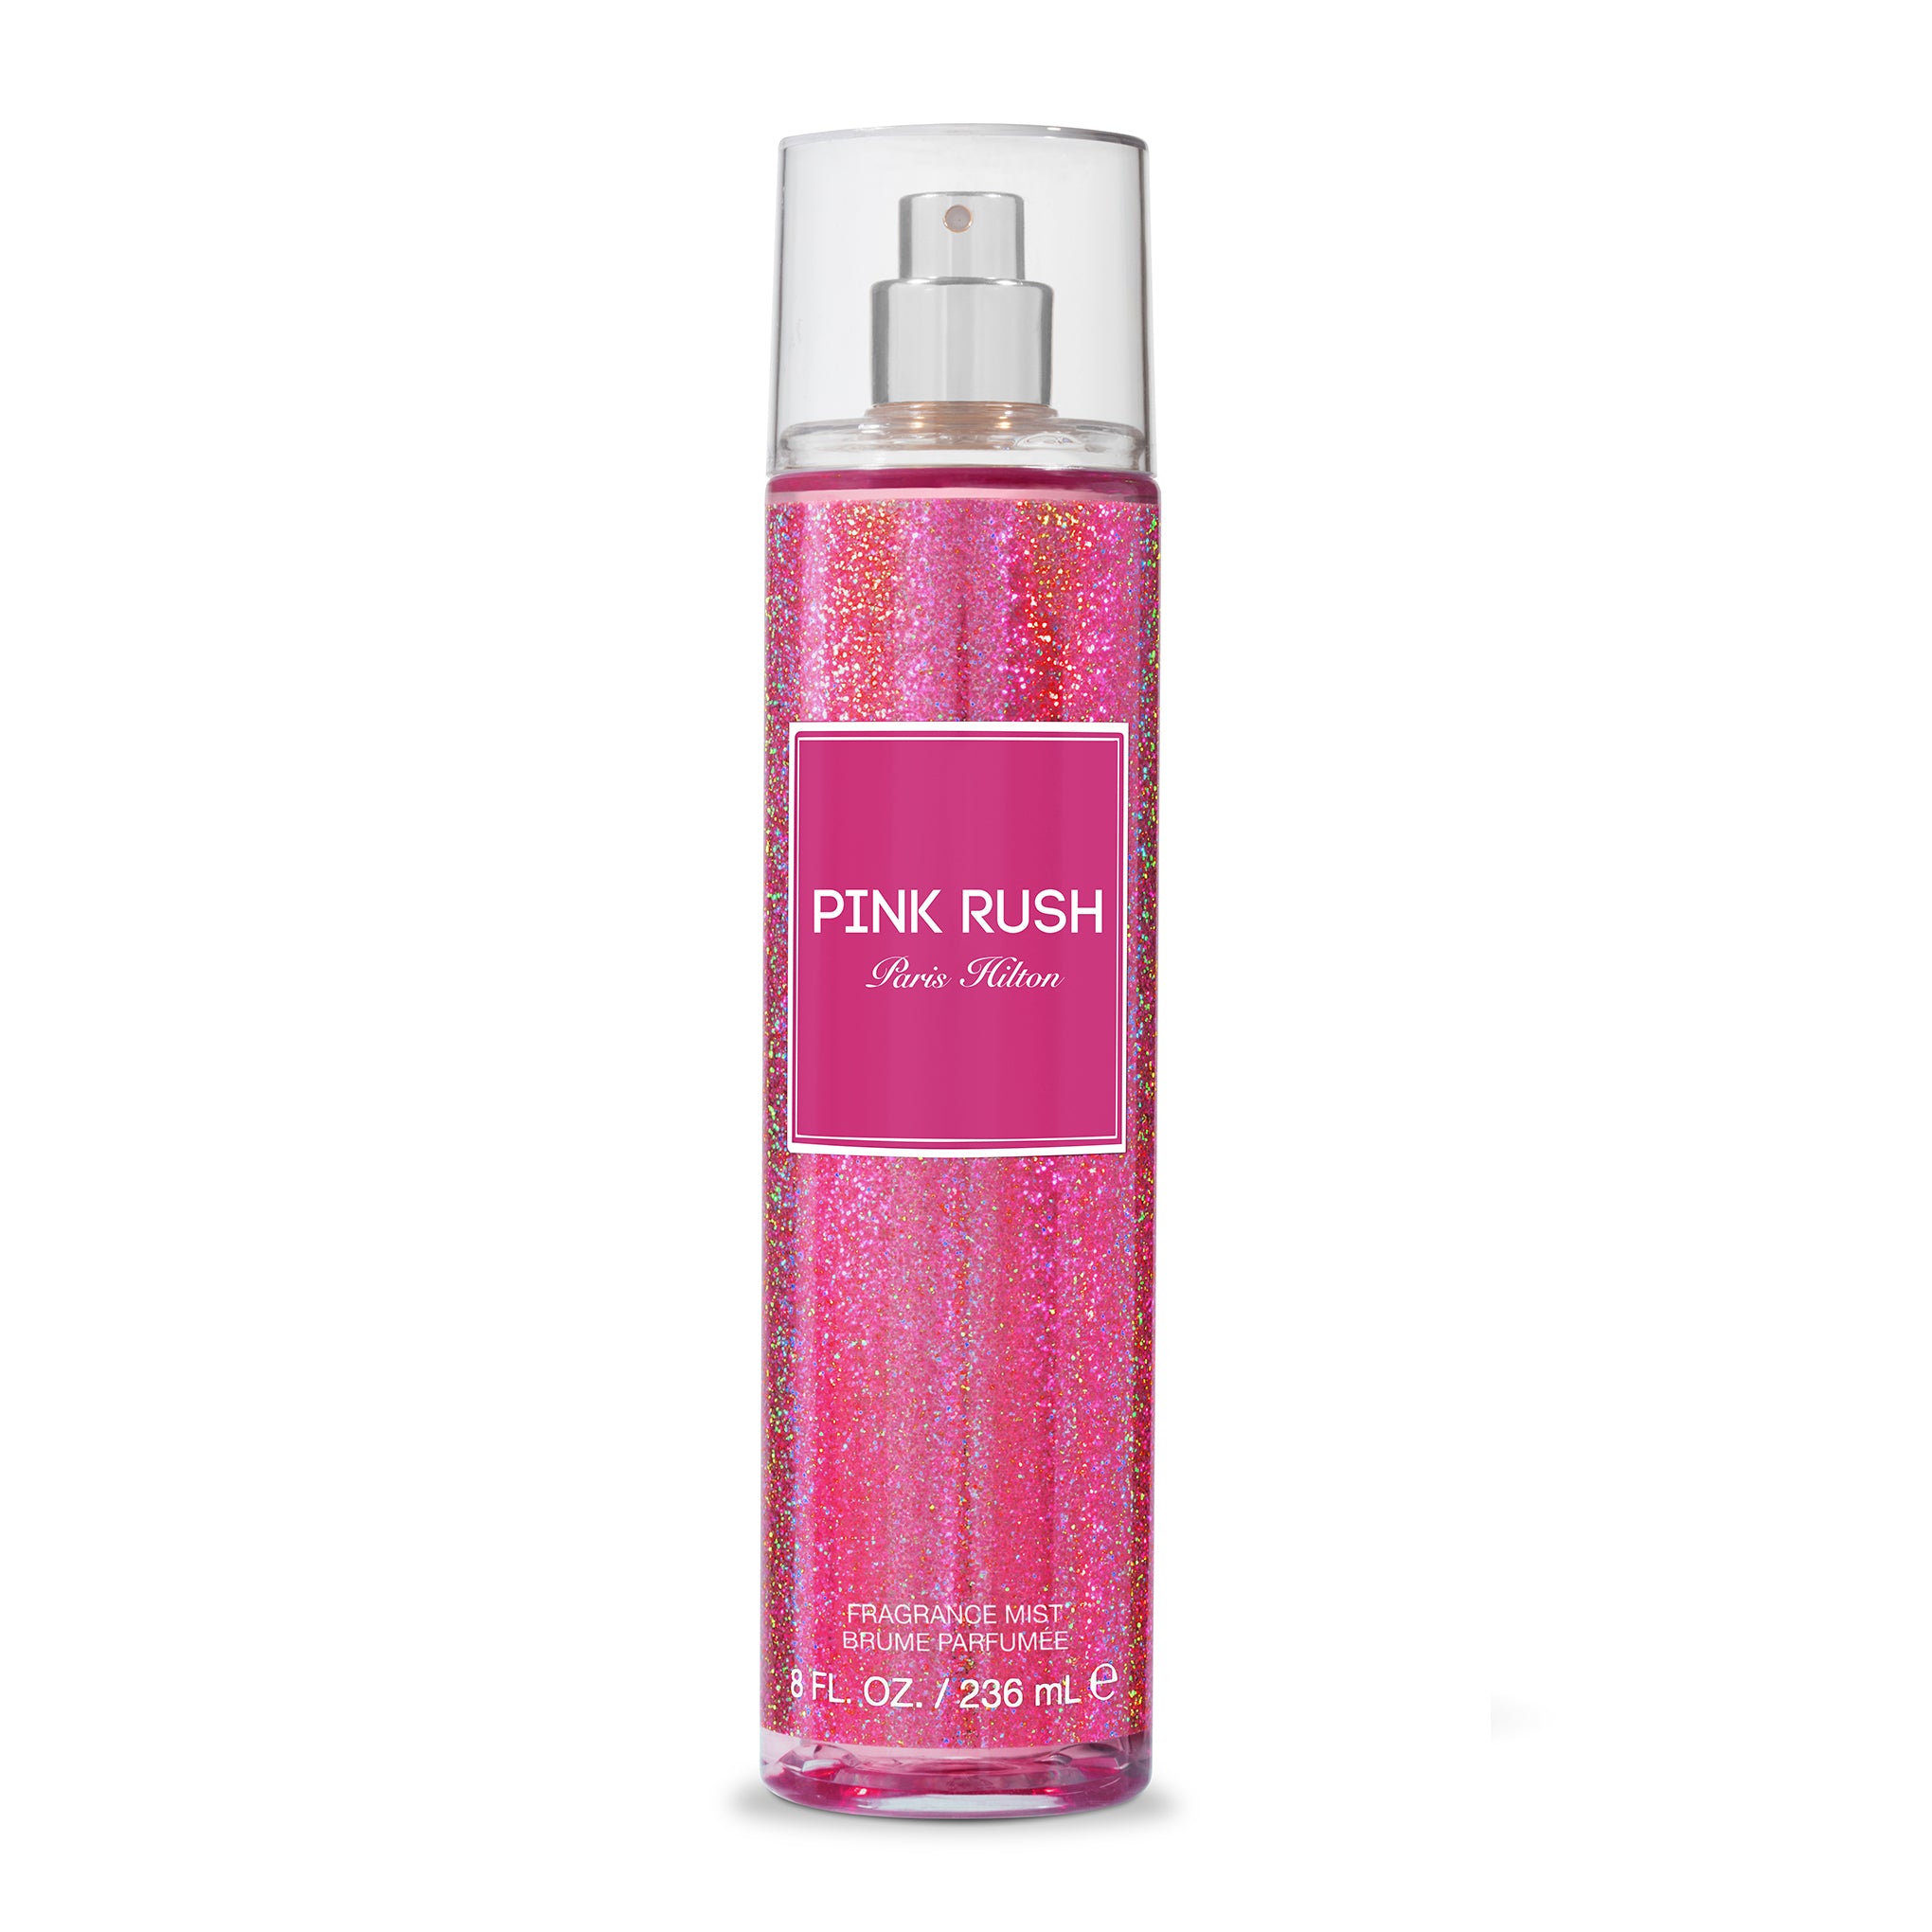 Paris Hilton Pink Rush Body Spray